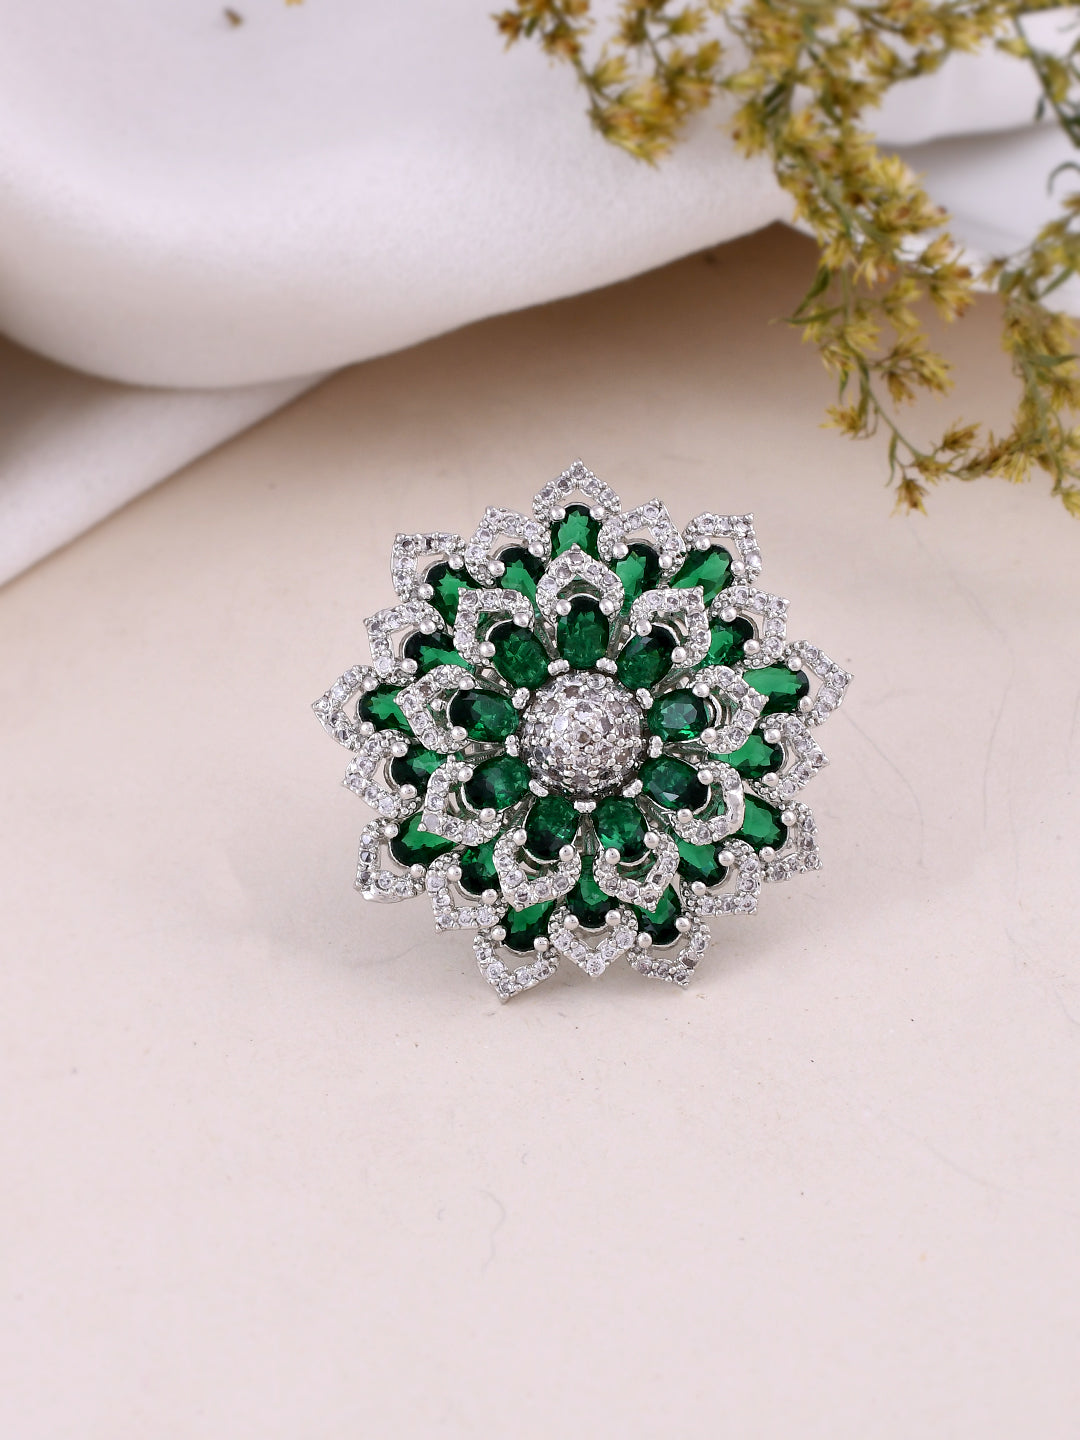 Buy Emerald Stone 5 Metal Finger Ring Shop Online FR1283